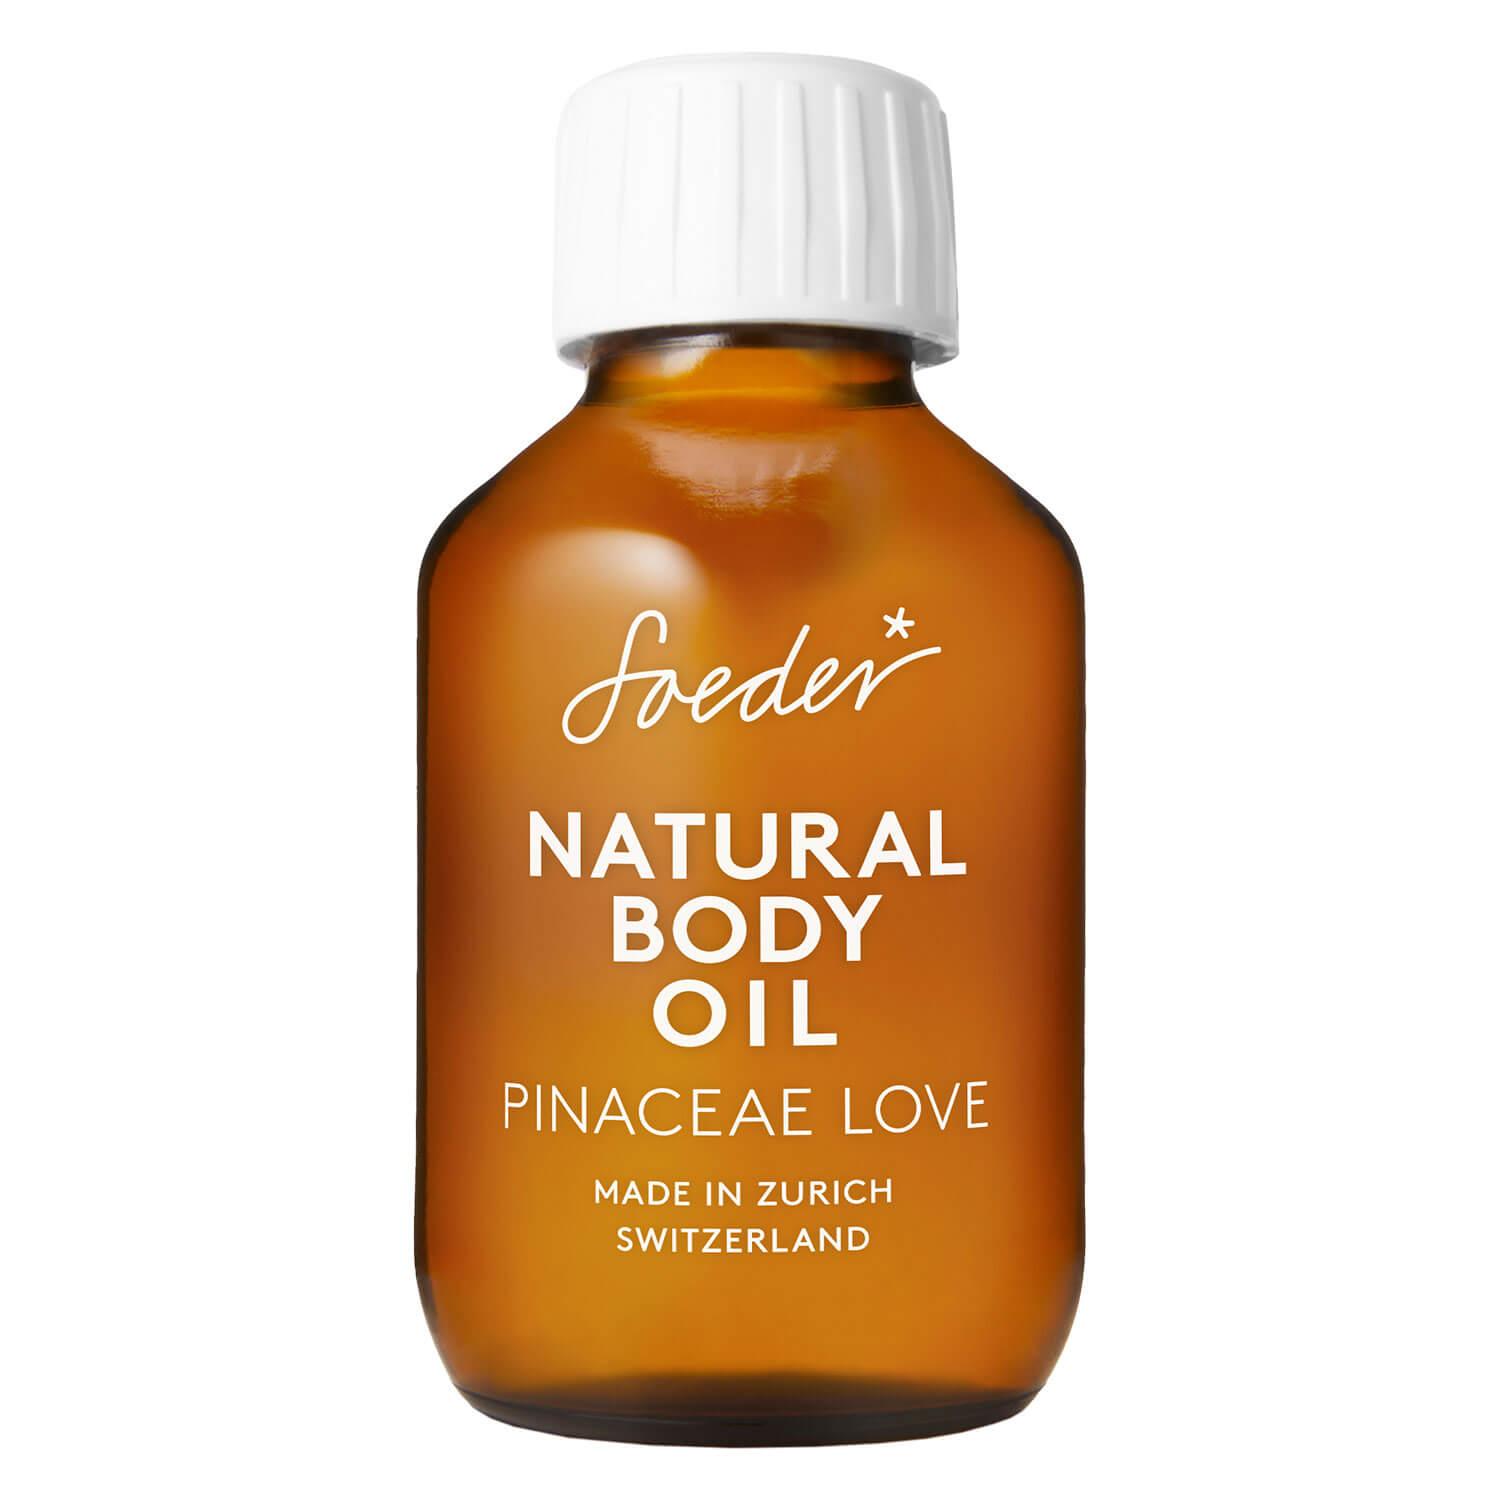 Soeder - Natural Body Oil Pinaceae Love